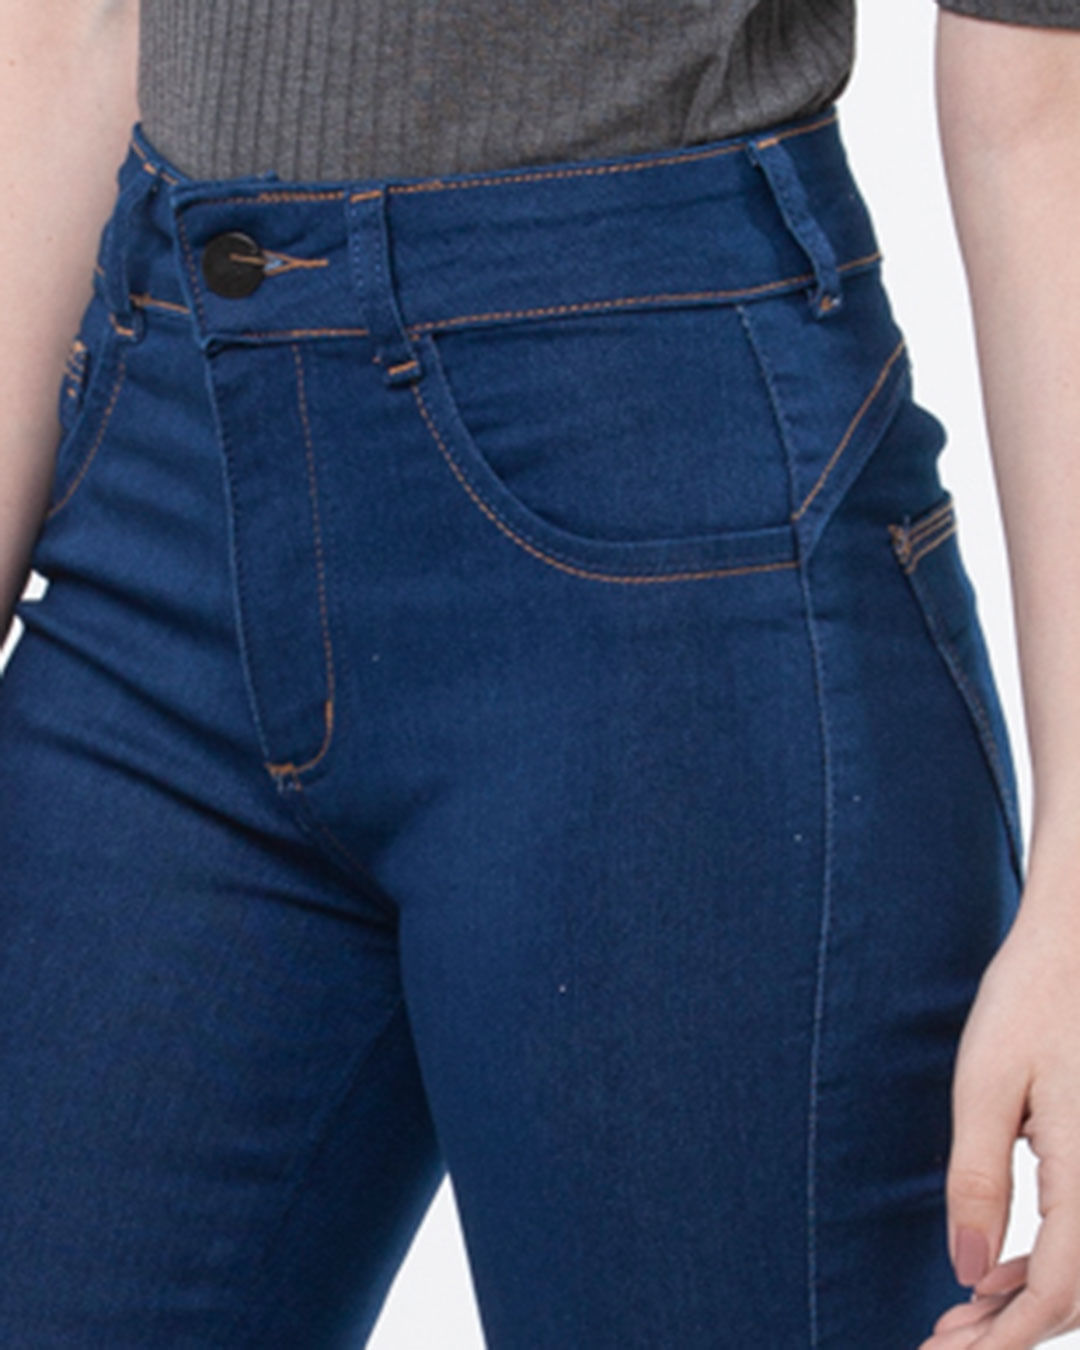 Calca-Jeans-Feminina-Skinny-Biotipo-Azul